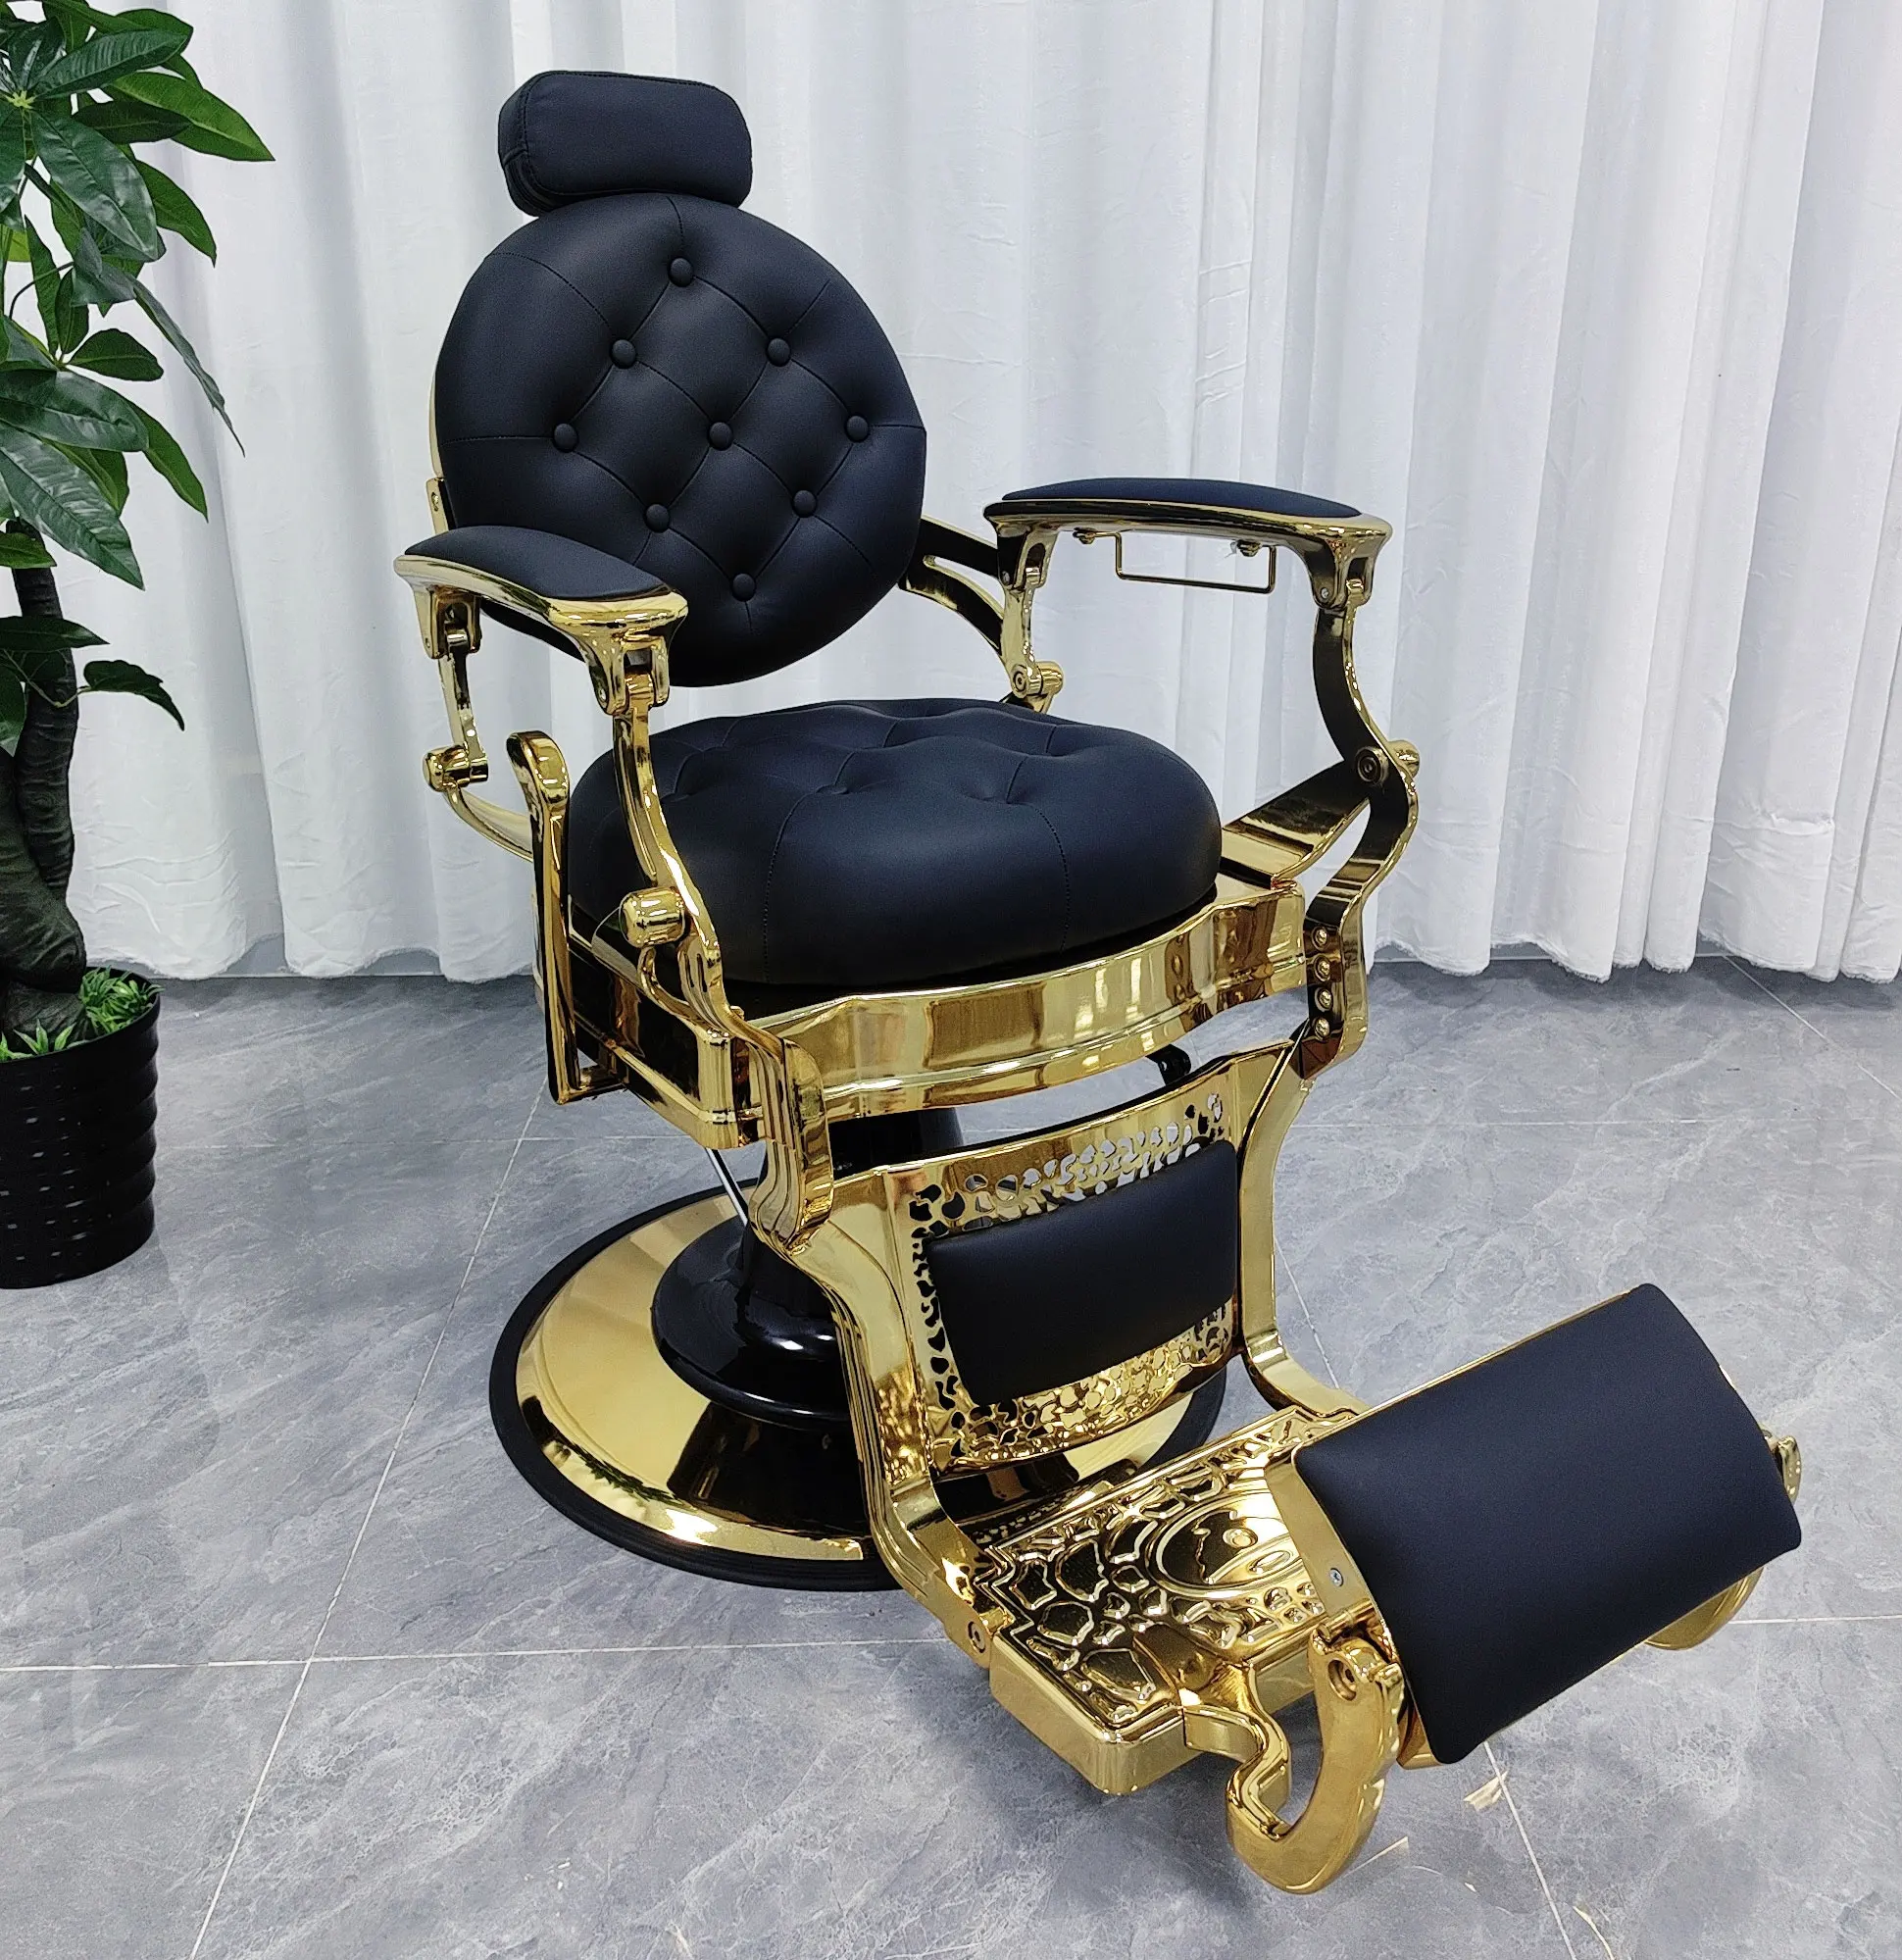 Luxo vintage ouro quadro couro sintético salão mobiliário haircutting modelagem barbeiro cadeira dos homens cabeleireiro cadeiras